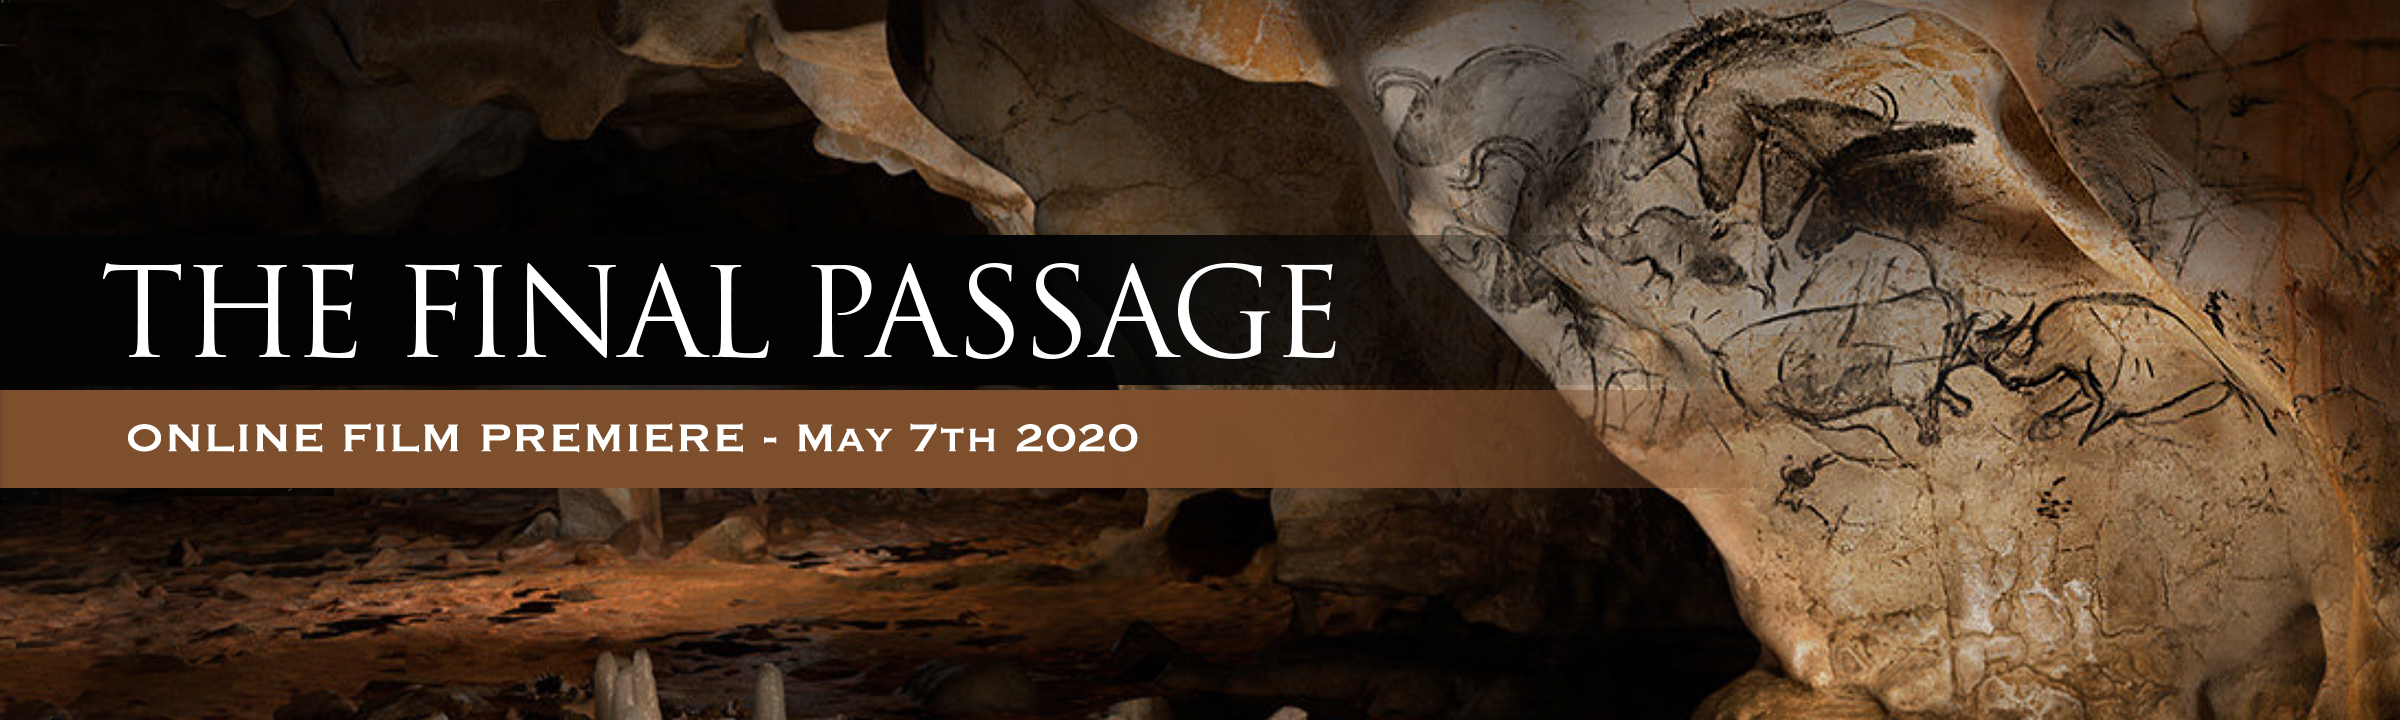 Rock Art Network The Final Passage Chauvet Cave France